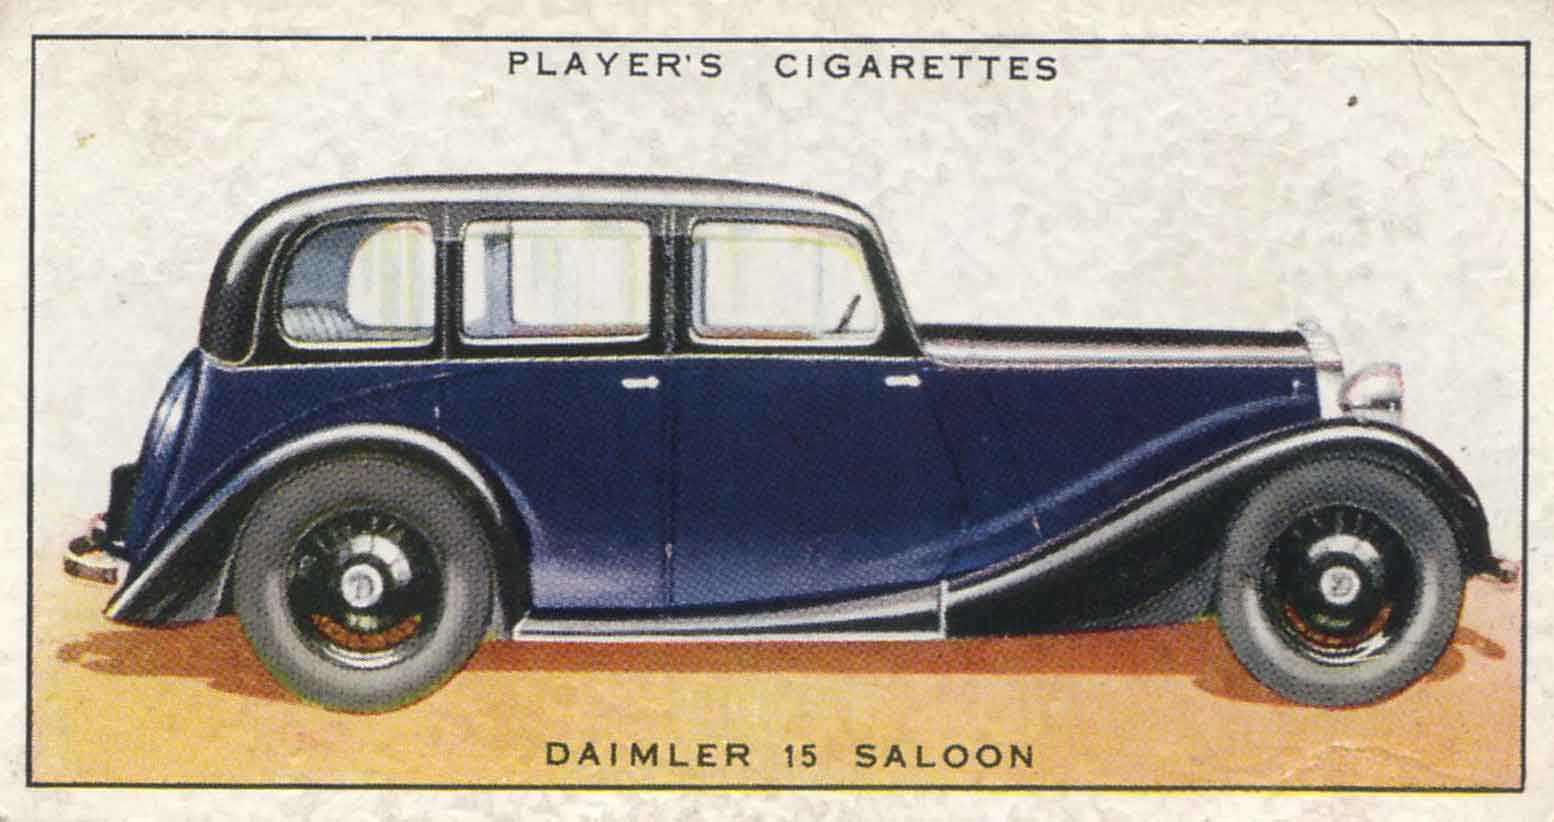 Daimler 15 Saloon. 1937 cigarette card.